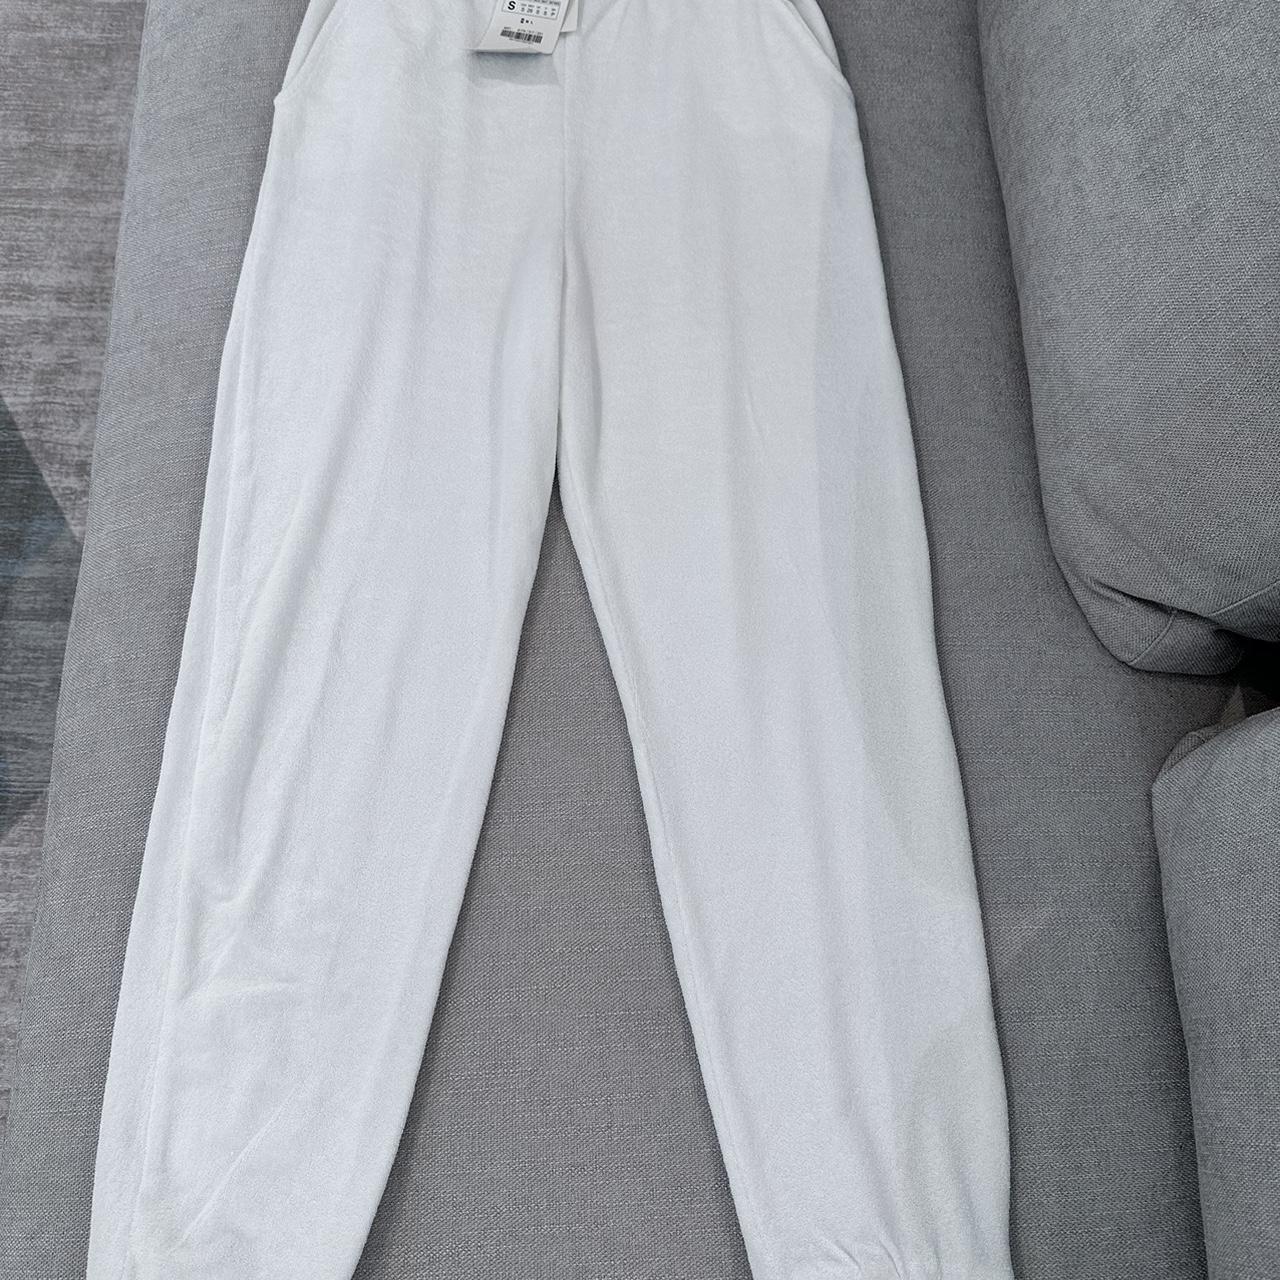 Zara white tracksuit bottoms size small - Depop